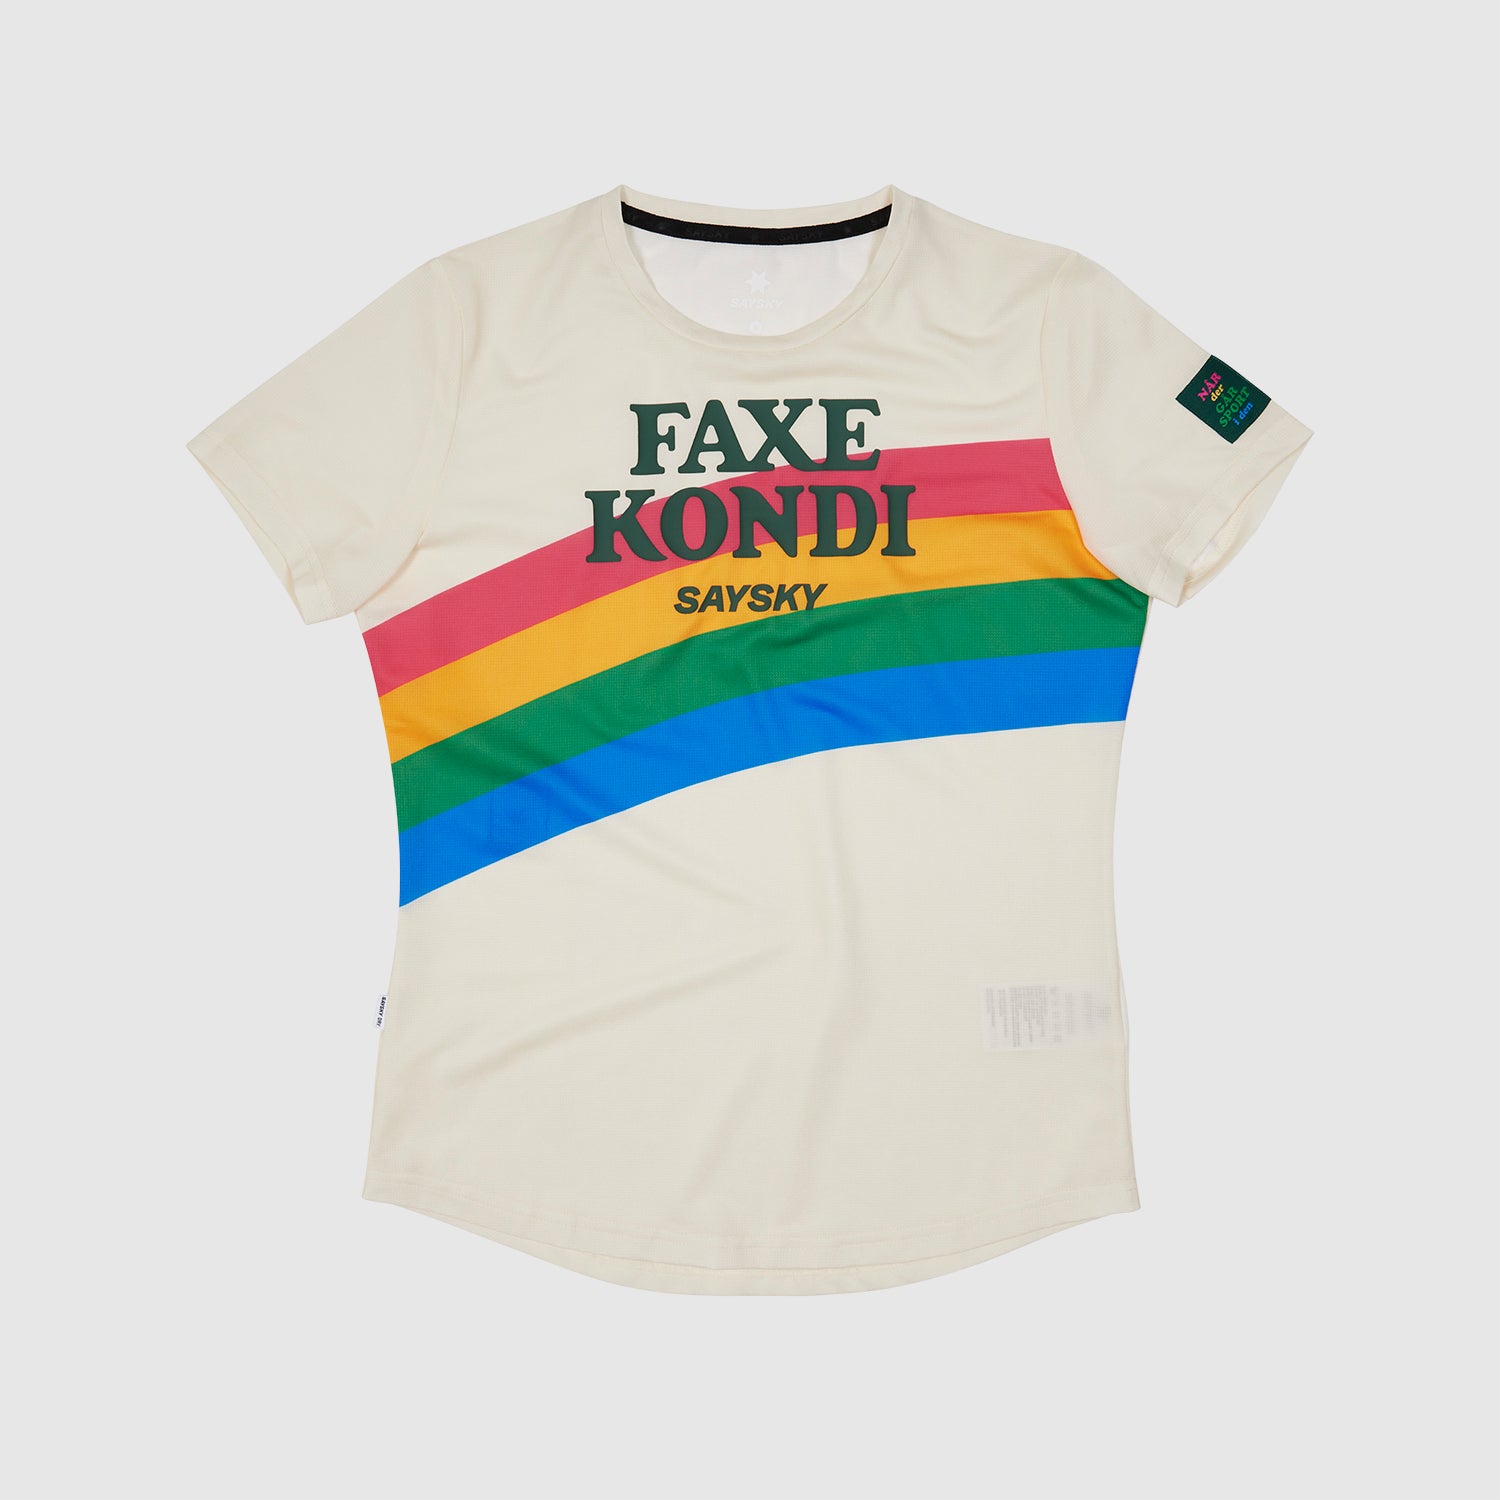 WMNS Faxe Kondi SAYSKY T-shirt